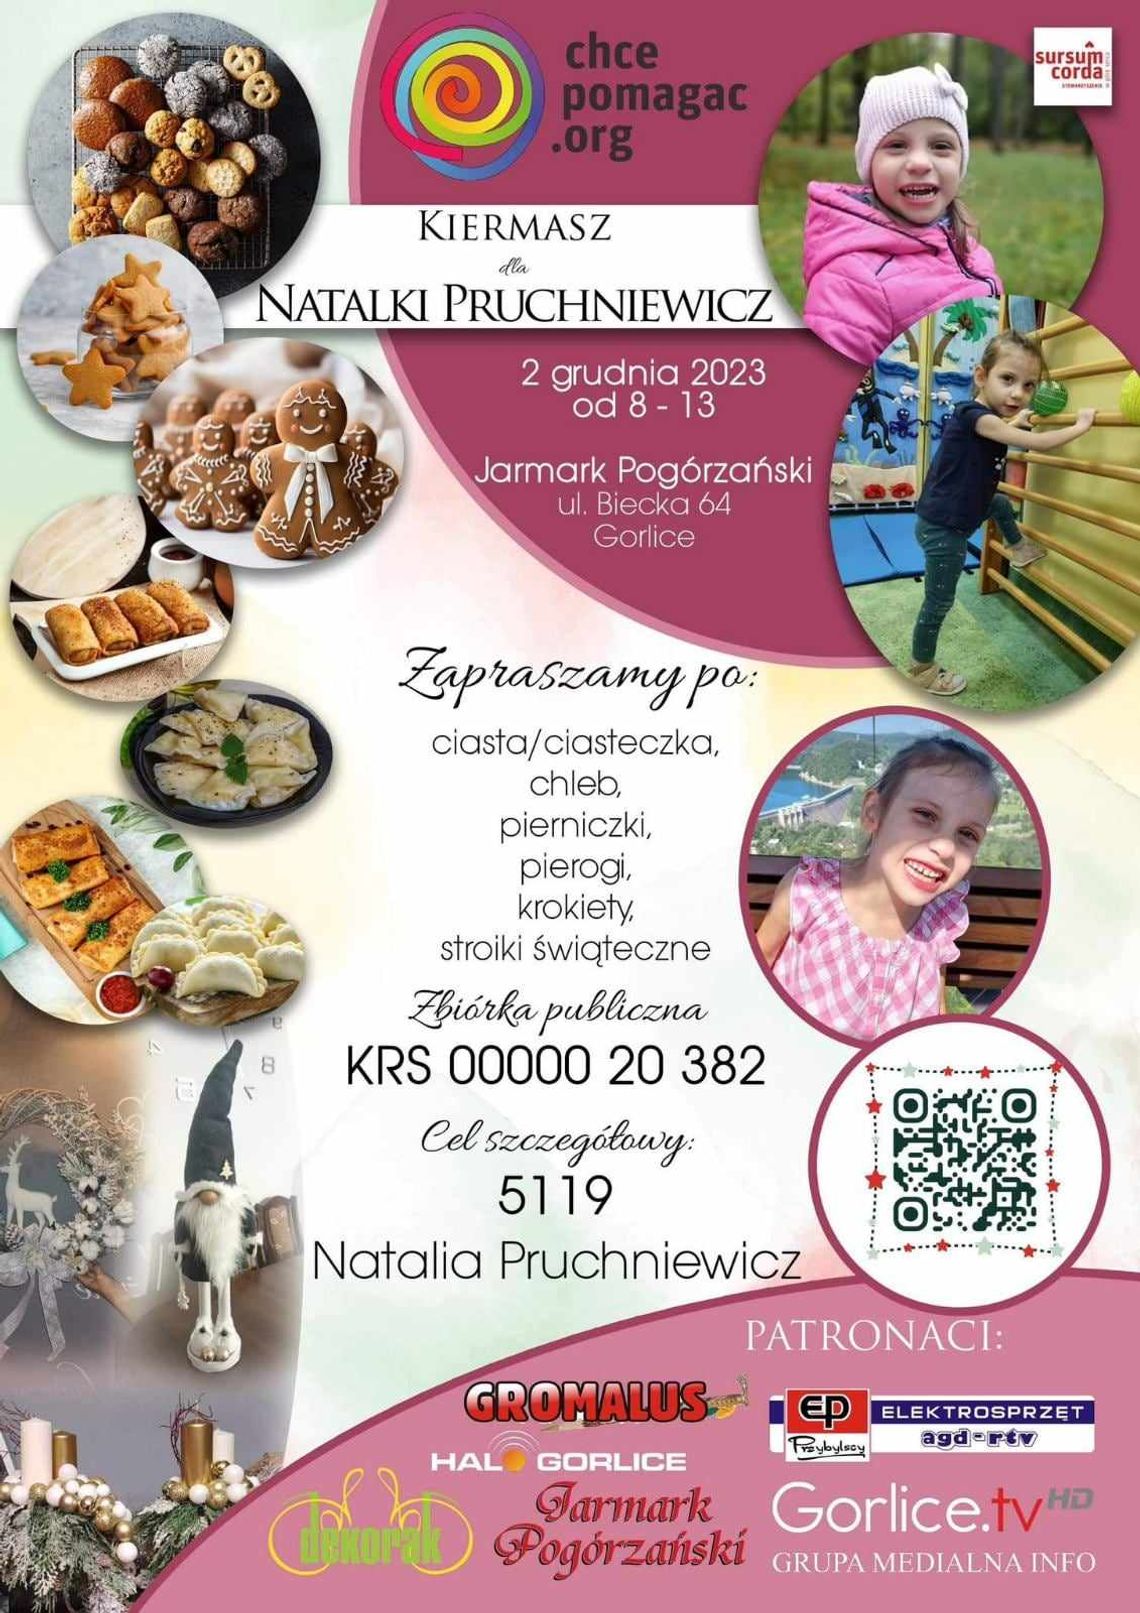 Kiermasz dla Natalki Pruchniewicz | halogorlice.info